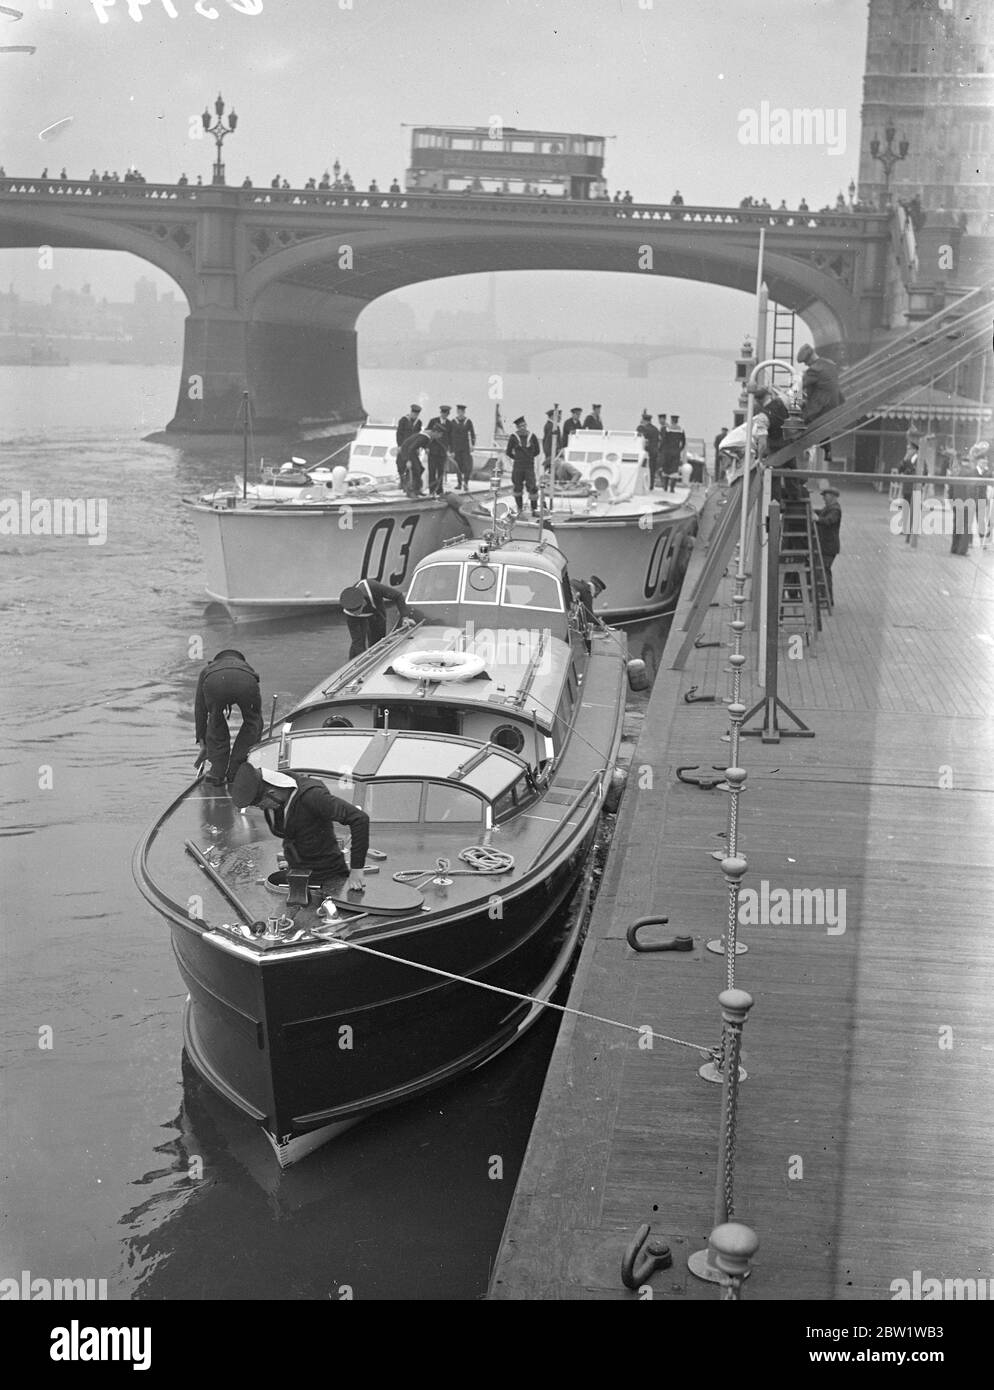 King ist ein Binnenschiff, das im Pool von London festgemacht ist. Die Astros Barged (ganz rechts), in denen der König und die Königin am kommenden Dienstag zur Eröffnung des National Maritime Museum nach Greenwich fahren werden, mit den begleitenden Motortorpedobooten neben dem Zerstörer 'HMS Wishart (D67)' im Pool von London. Die 'Wishart', Uhr war als Eskorte zu dienen, aber wurde beschädigt, wenn man im Pool festmacht. 24. April 1937 Stockfoto